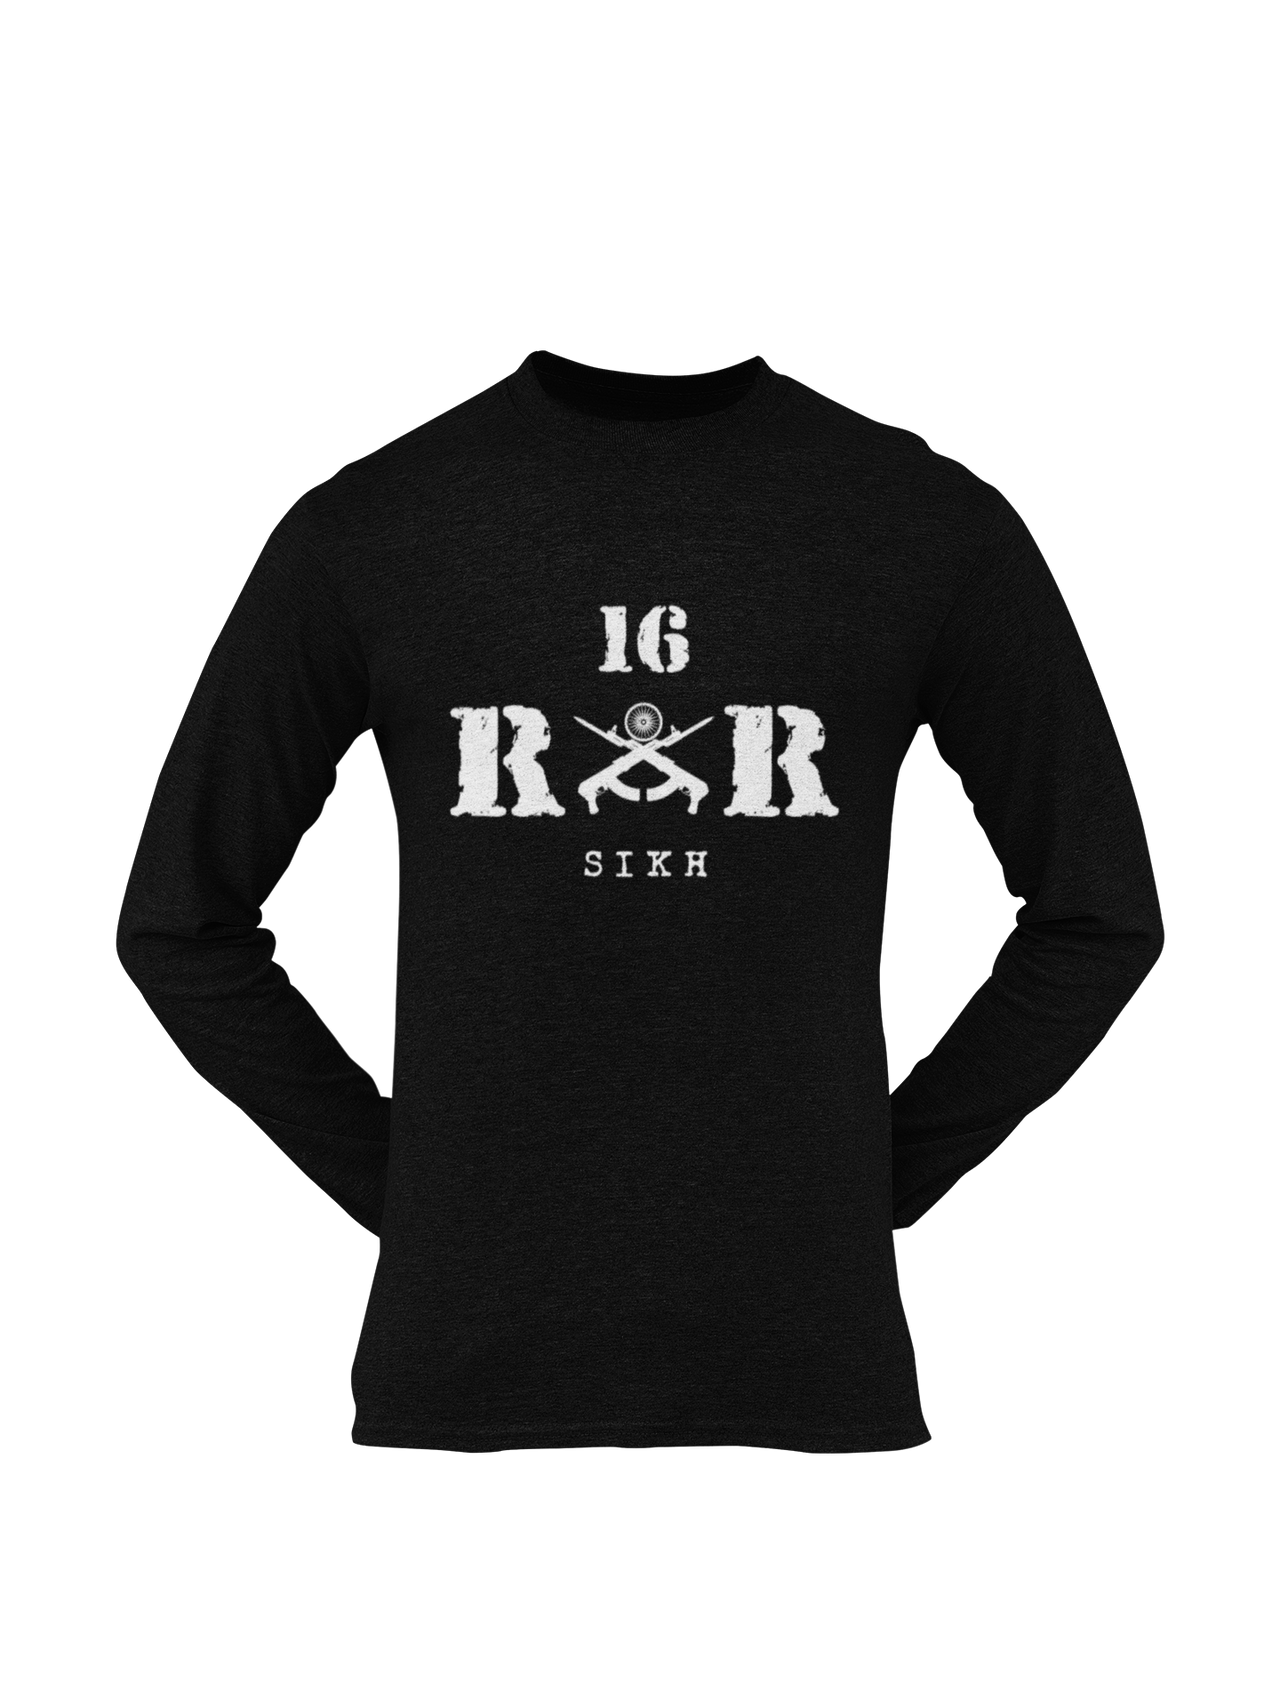 Rashtriya Rifles T-shirt - 16 RR Sikh (Men)